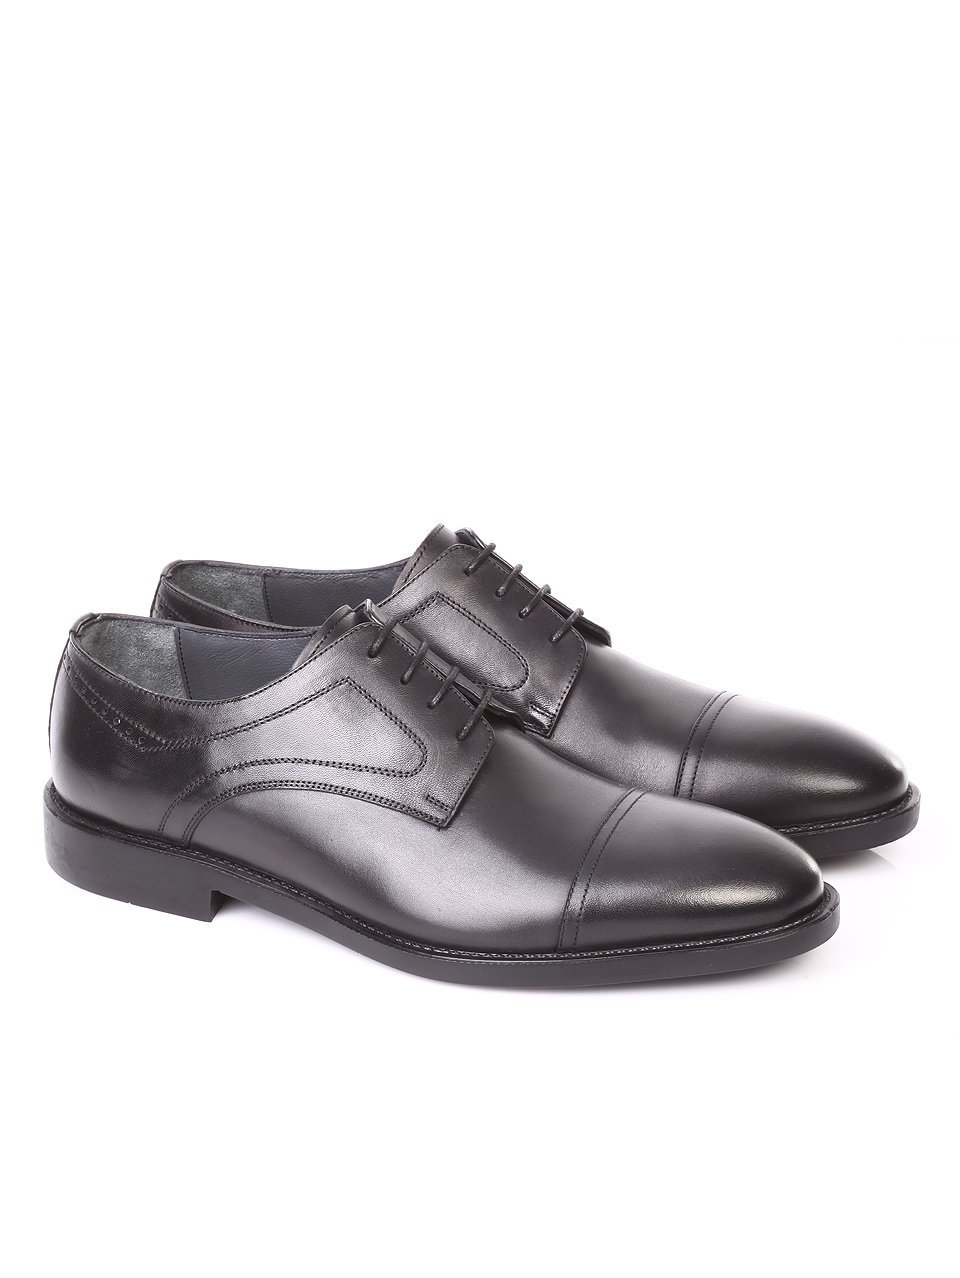 Елегантни мъжки обувки от естествена кожа 7AT-171130 black